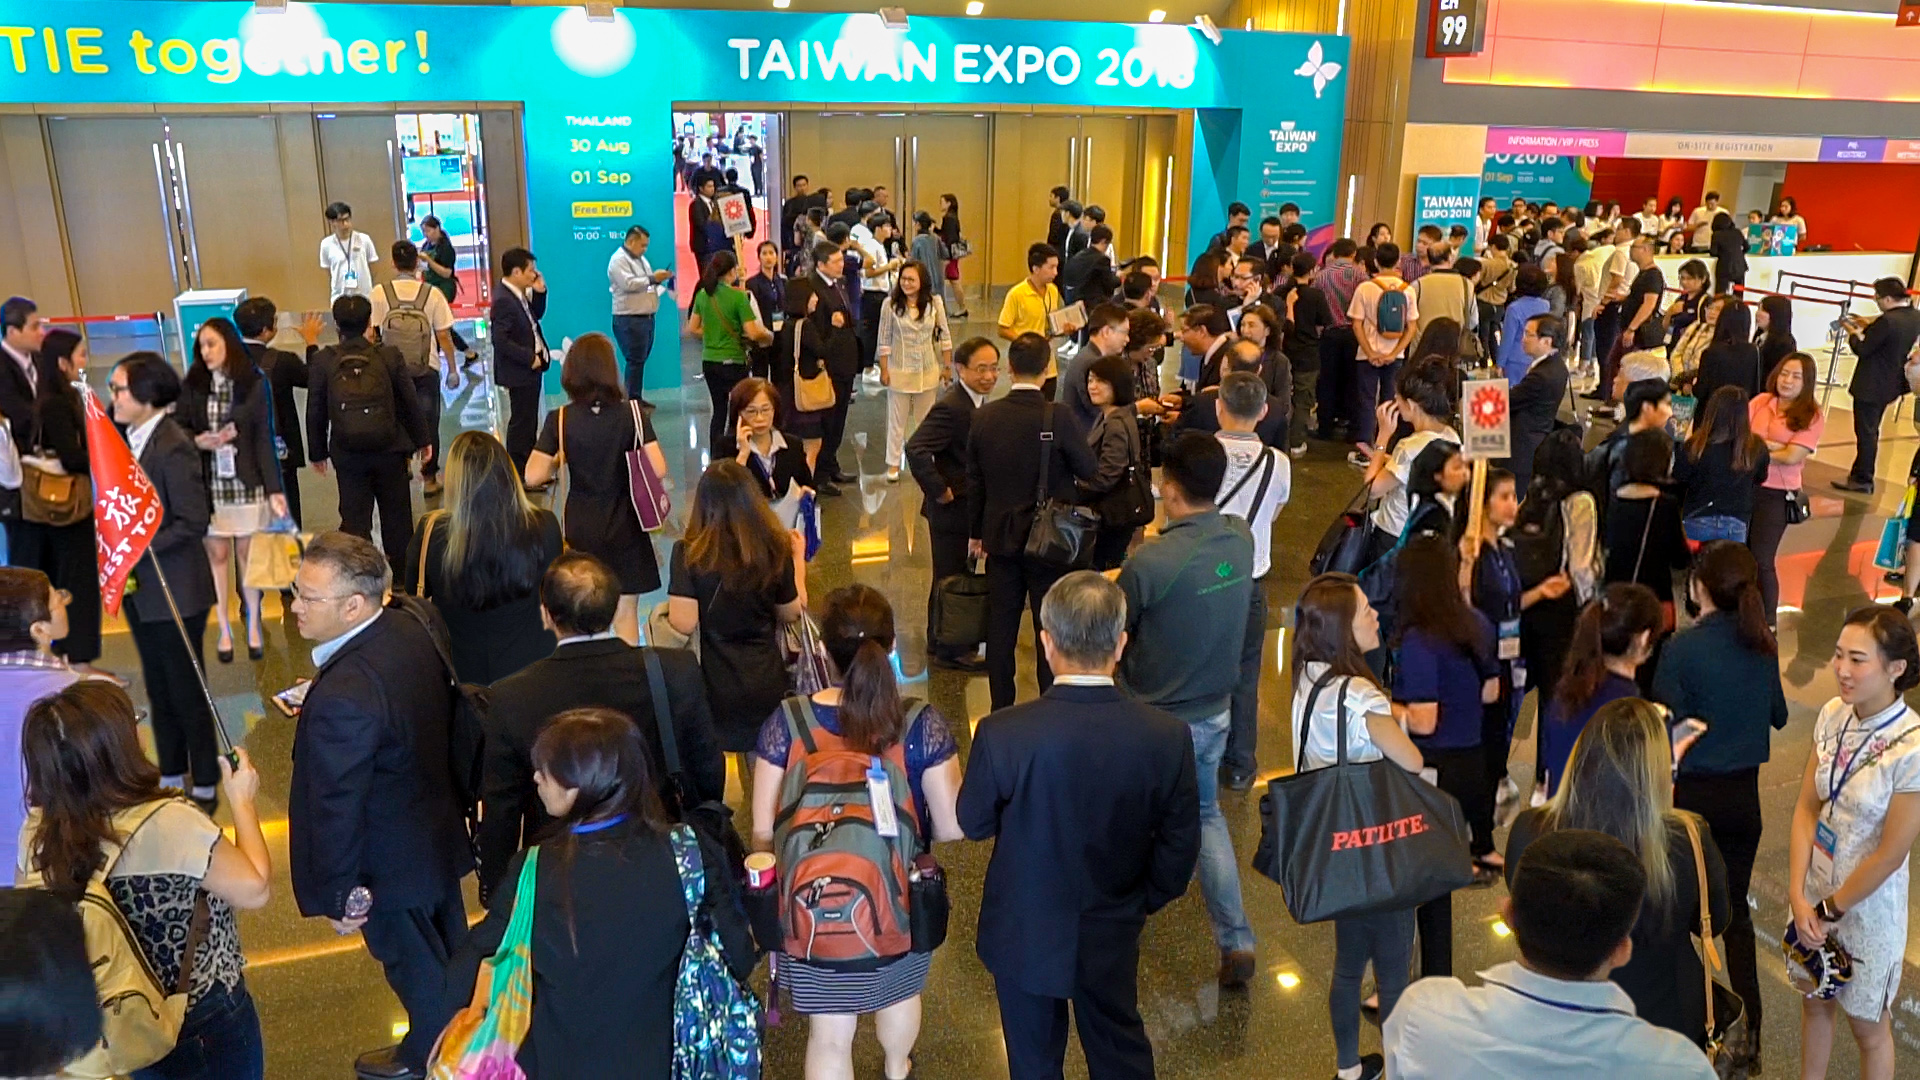 กรุงเทพฯ  ///  งาน Taiwan Expo 2018 ประเดิมครั้งแรกในเมืองไทยด้วยยอดการค้าทะลุเป้าถึง 110 ล้านเหรียญสหรัฐ